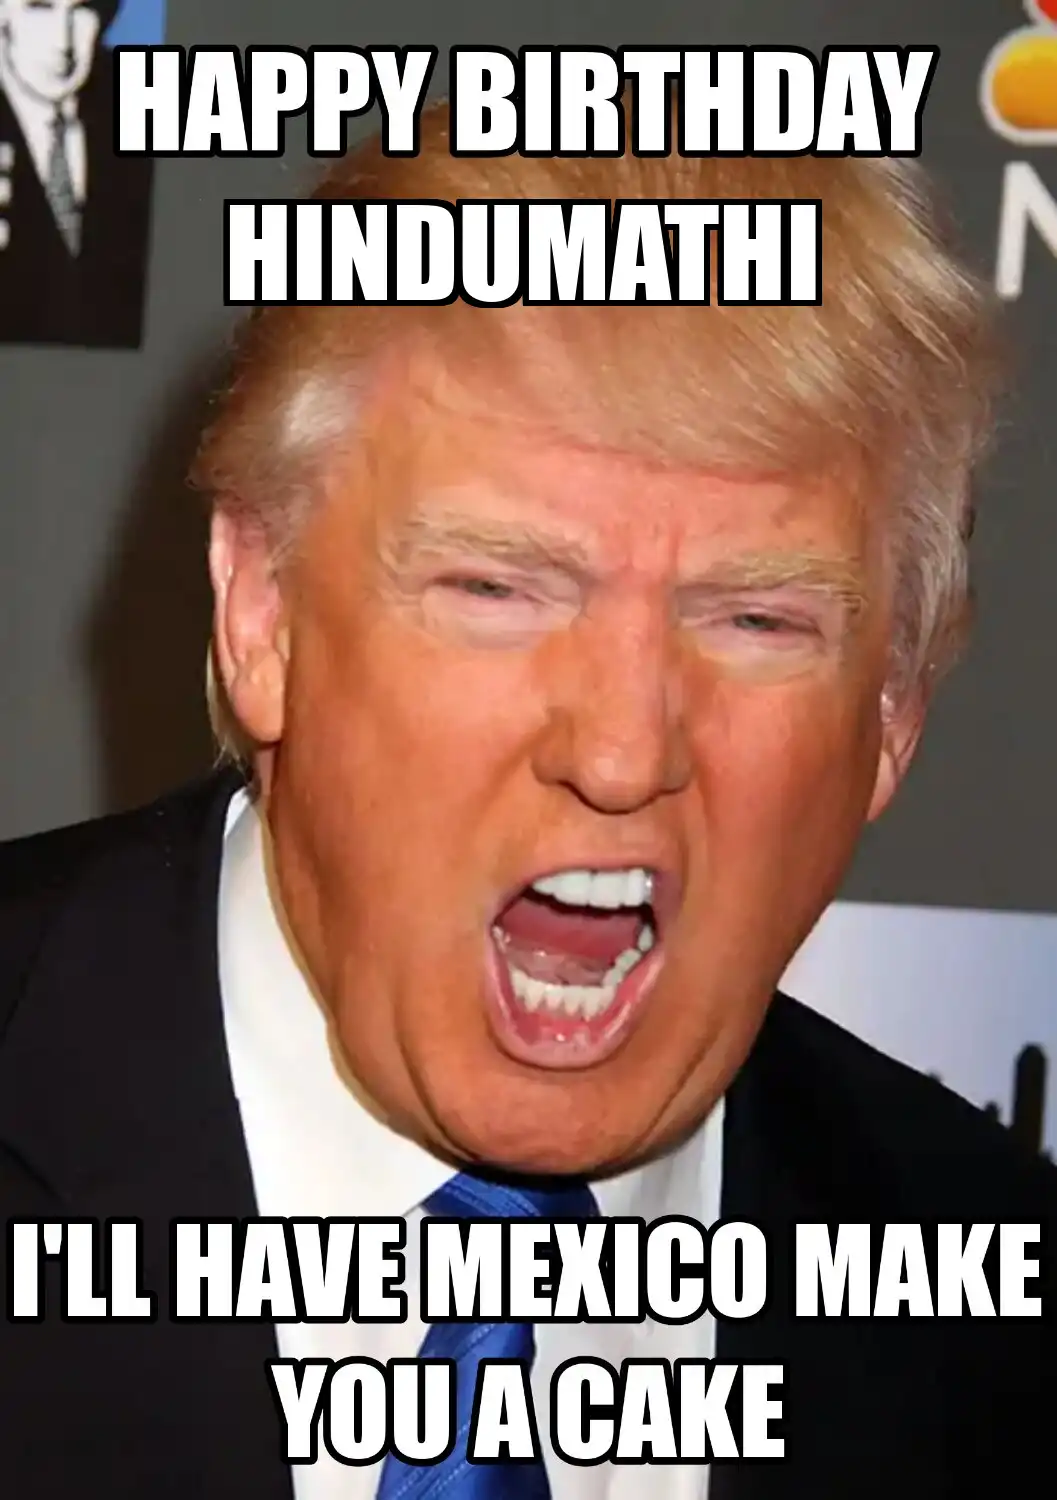 Happy Birthday Hindumathi Mexico Make You A Cake Meme